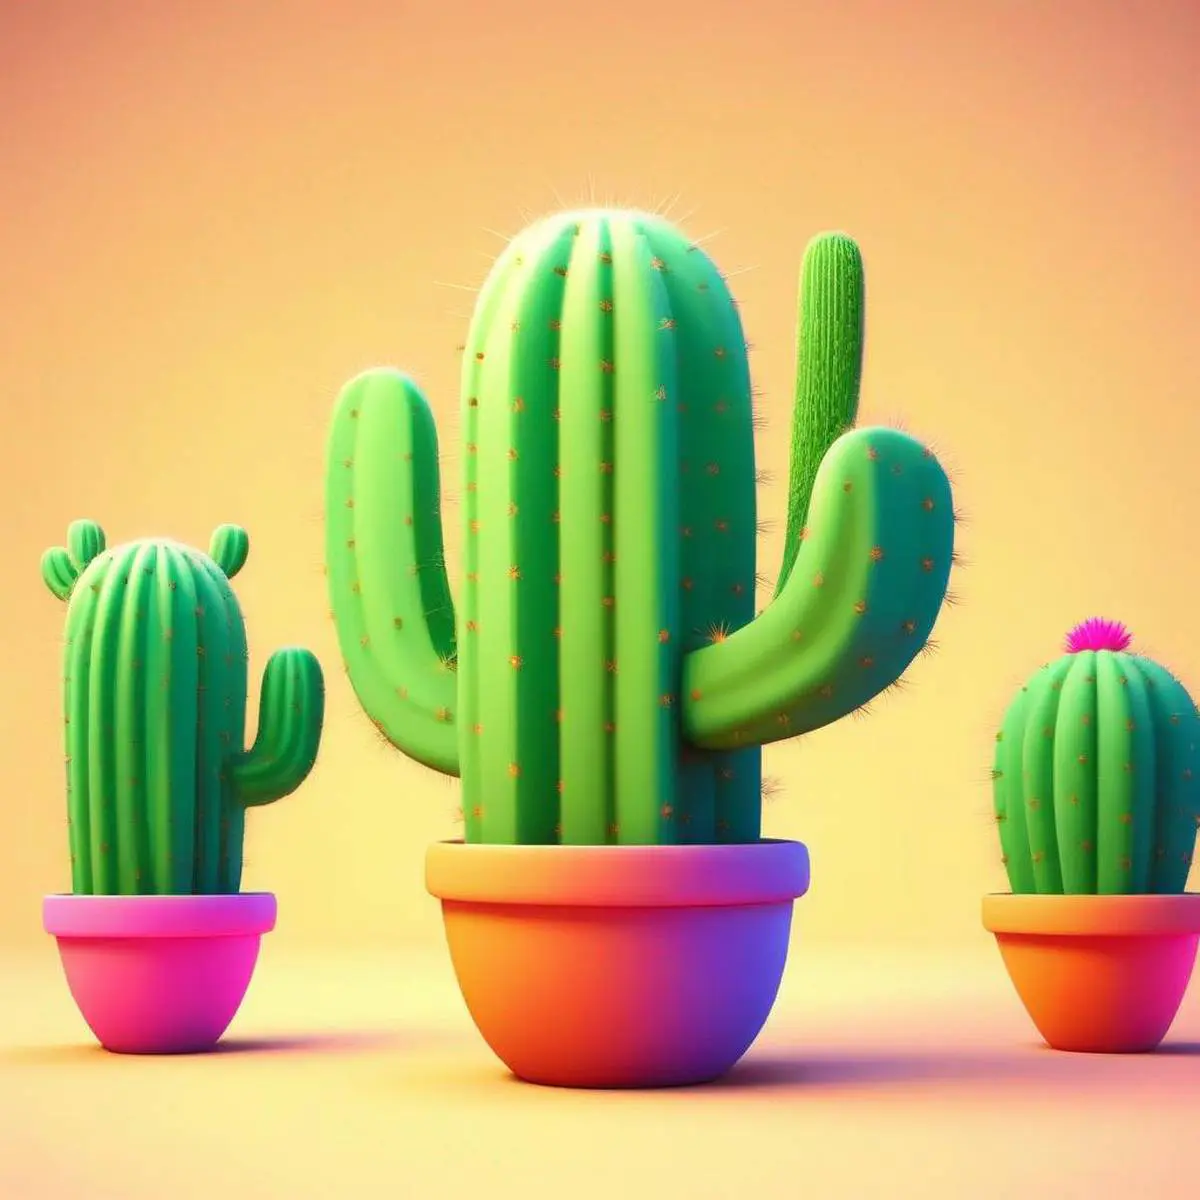 Cactus puns